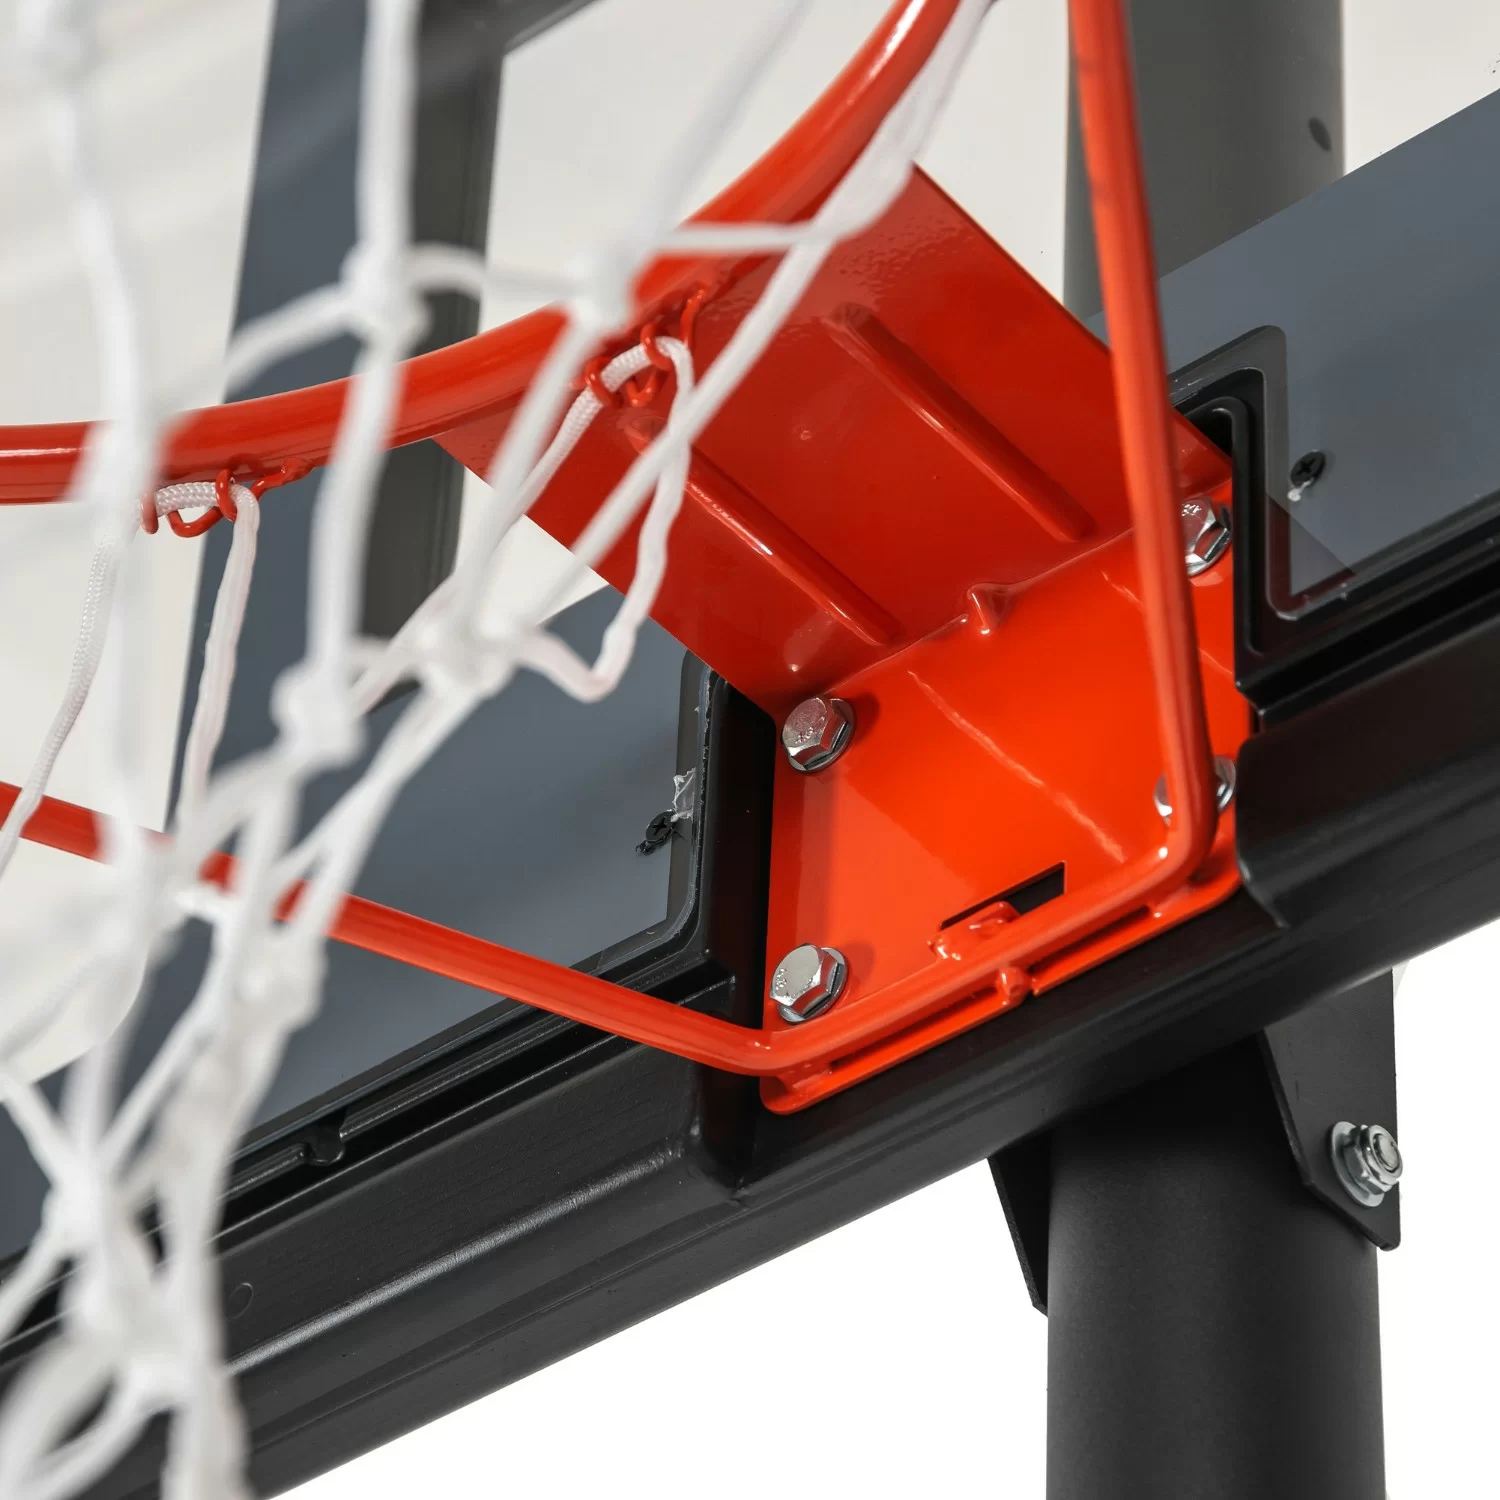 Реальное фото Баскетбольная мобильная стойка DFC STAND44A003 от магазина СпортЕВ